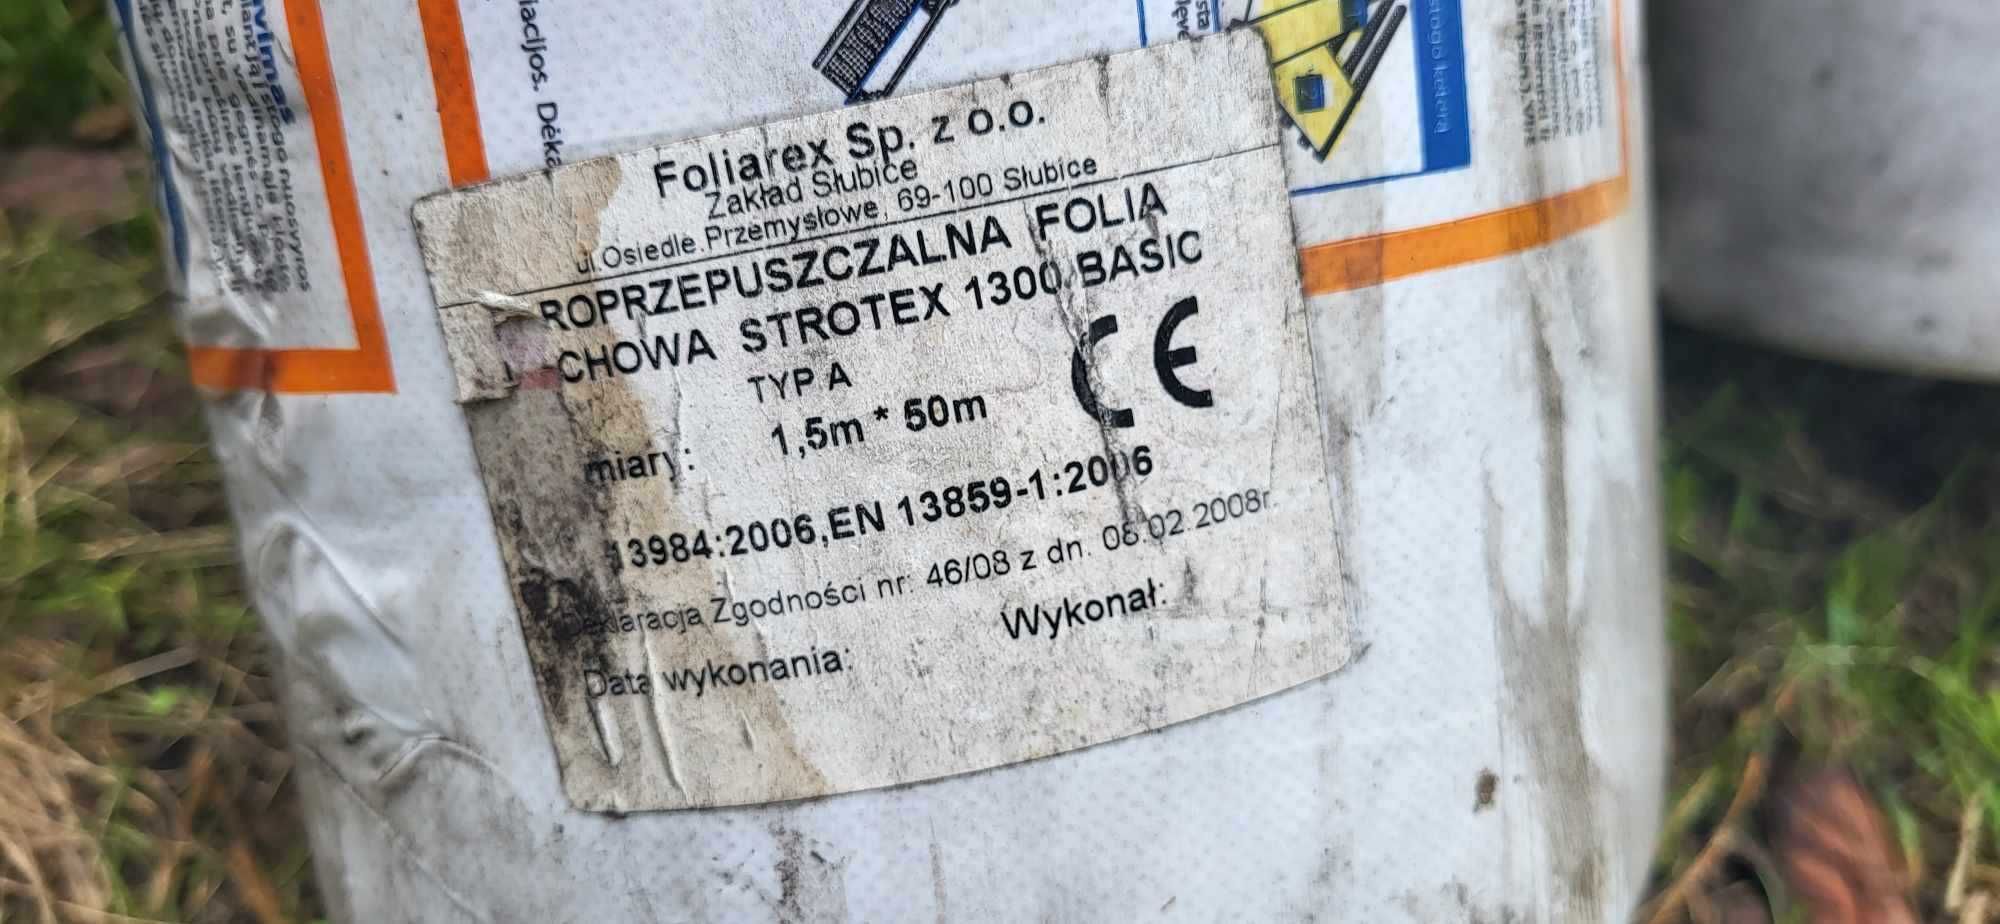 Roprzepuszczalna folia dachowa Strotex 1300 basic 1,5m*50m